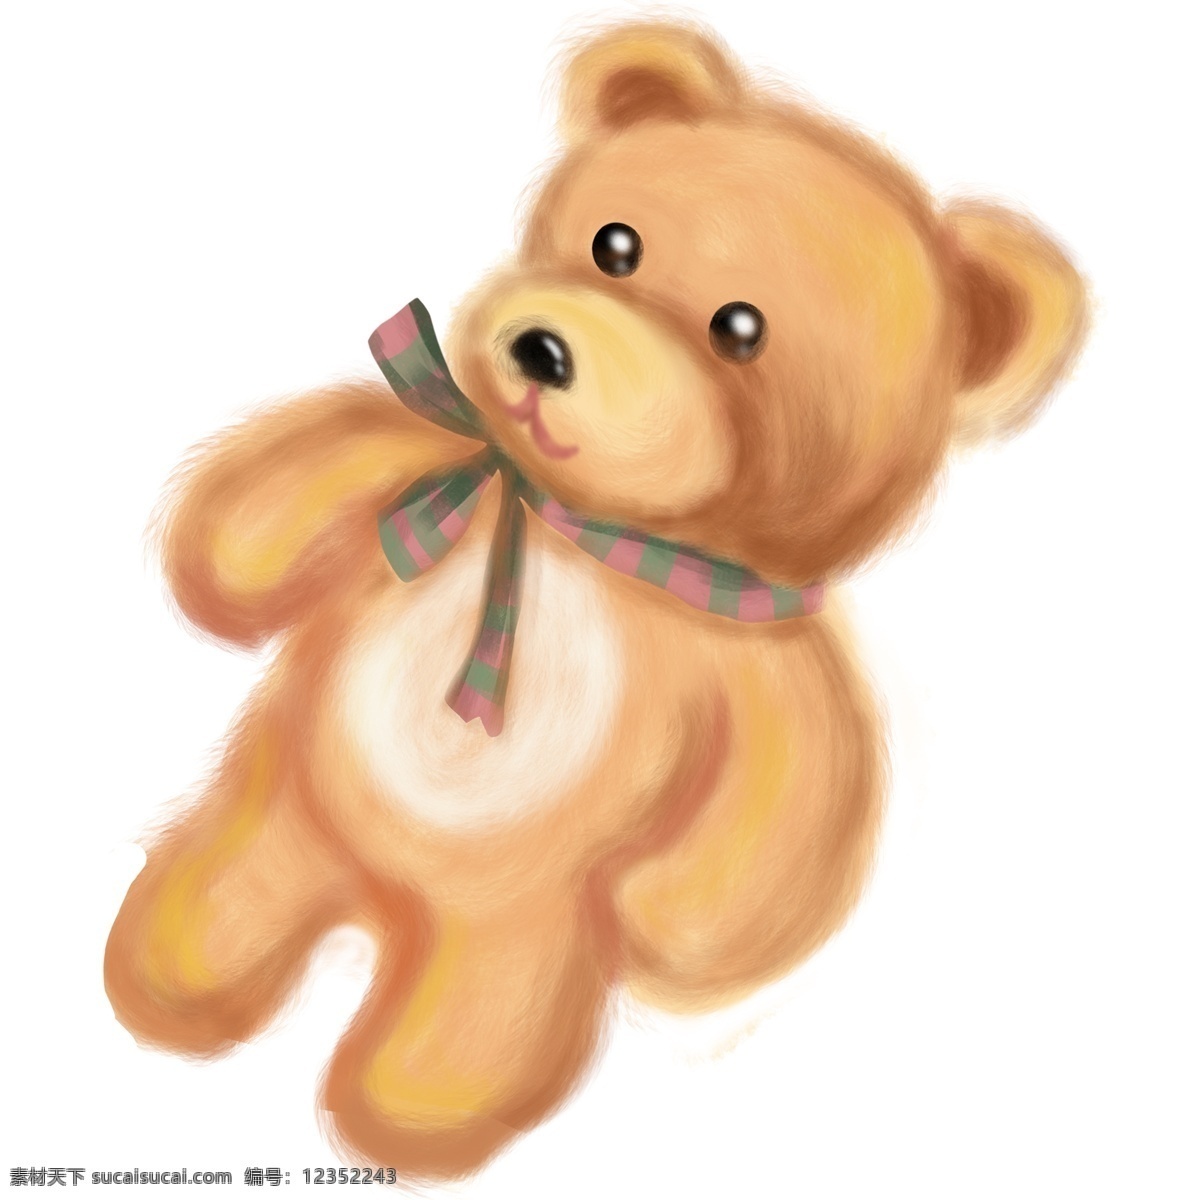 简约 手绘 玩具 熊 透明 儿童 玩具熊 透明素材 装饰元素 可爱风